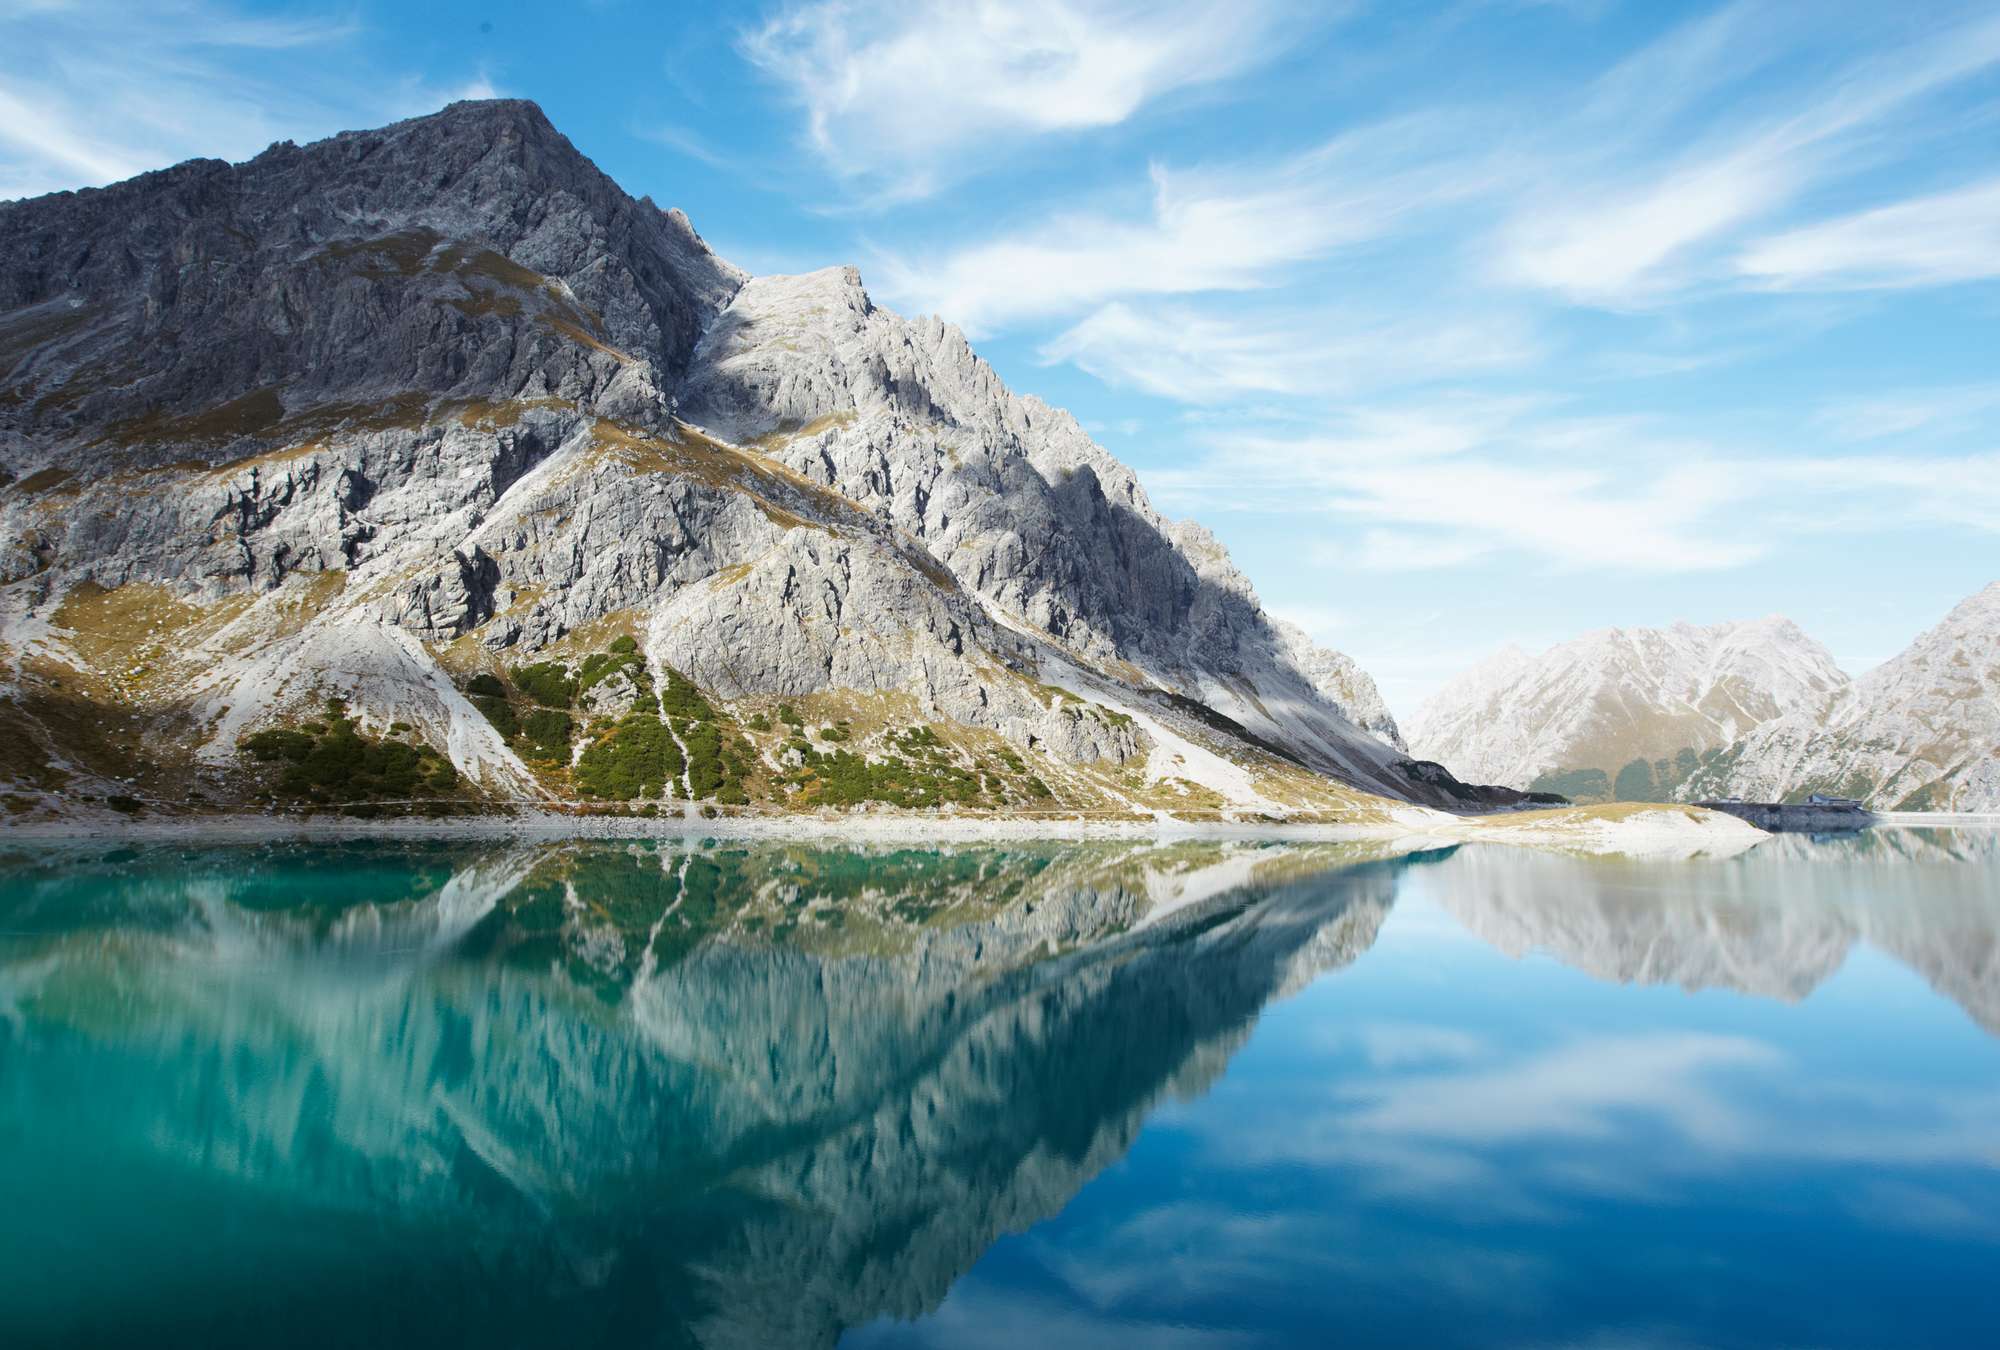             Bergmeer helder - fotobehang met natuurlijk bergpanorama
        